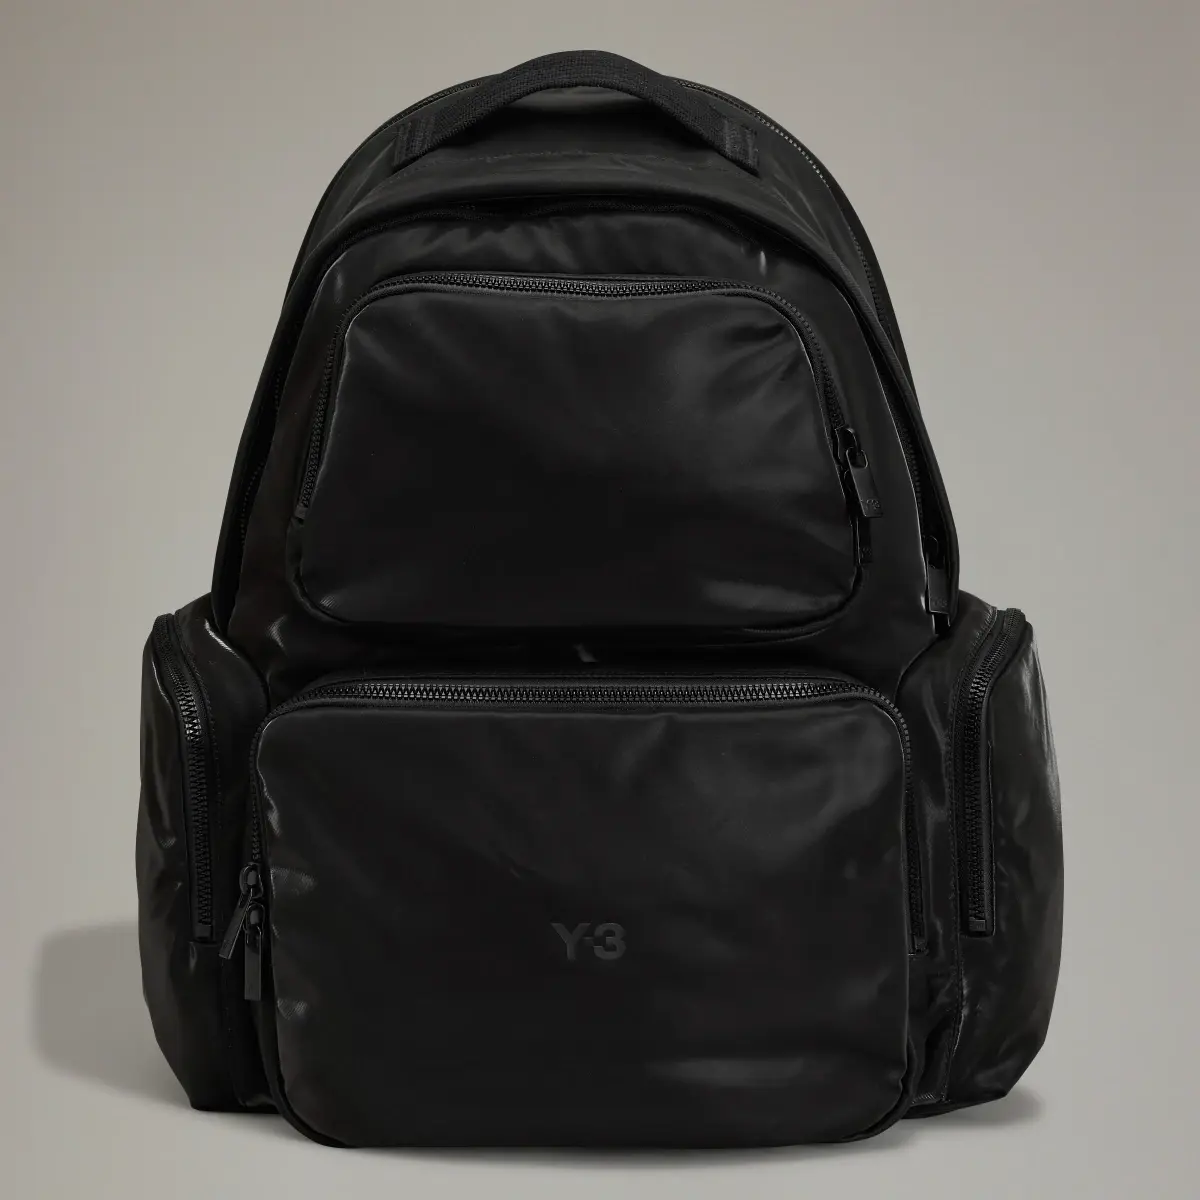 Adidas Y-3 Utility Backpack. 1